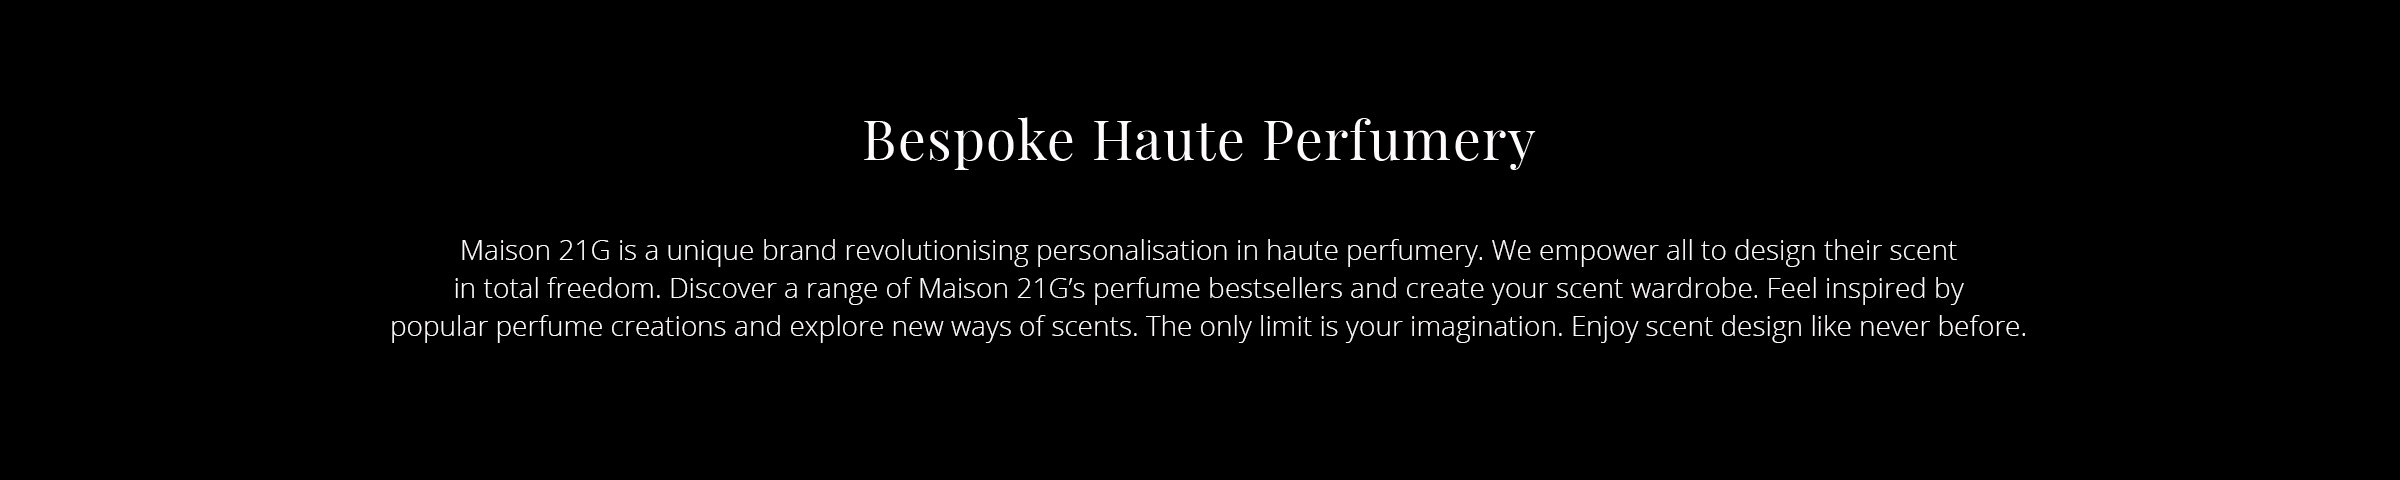 Maison 21G - Bespoke Haute Perfumery